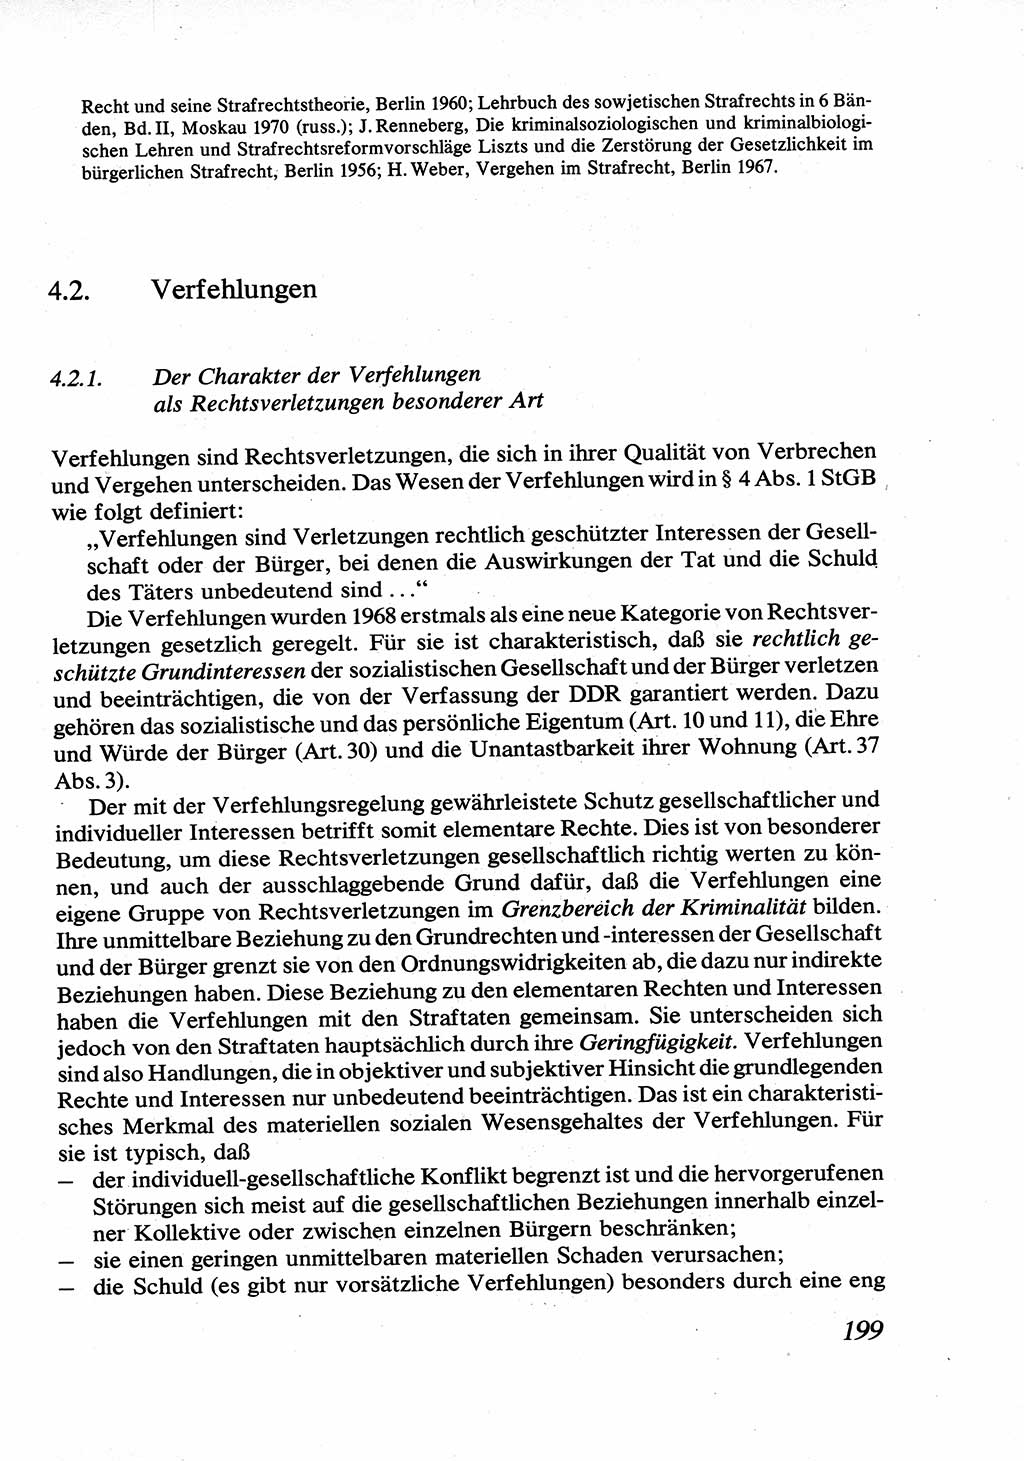 Strafrecht [Deutsche Demokratische Republik (DDR)], Allgemeiner Teil, Lehrbuch 1976, Seite 199 (Strafr. DDR AT Lb. 1976, S. 199)